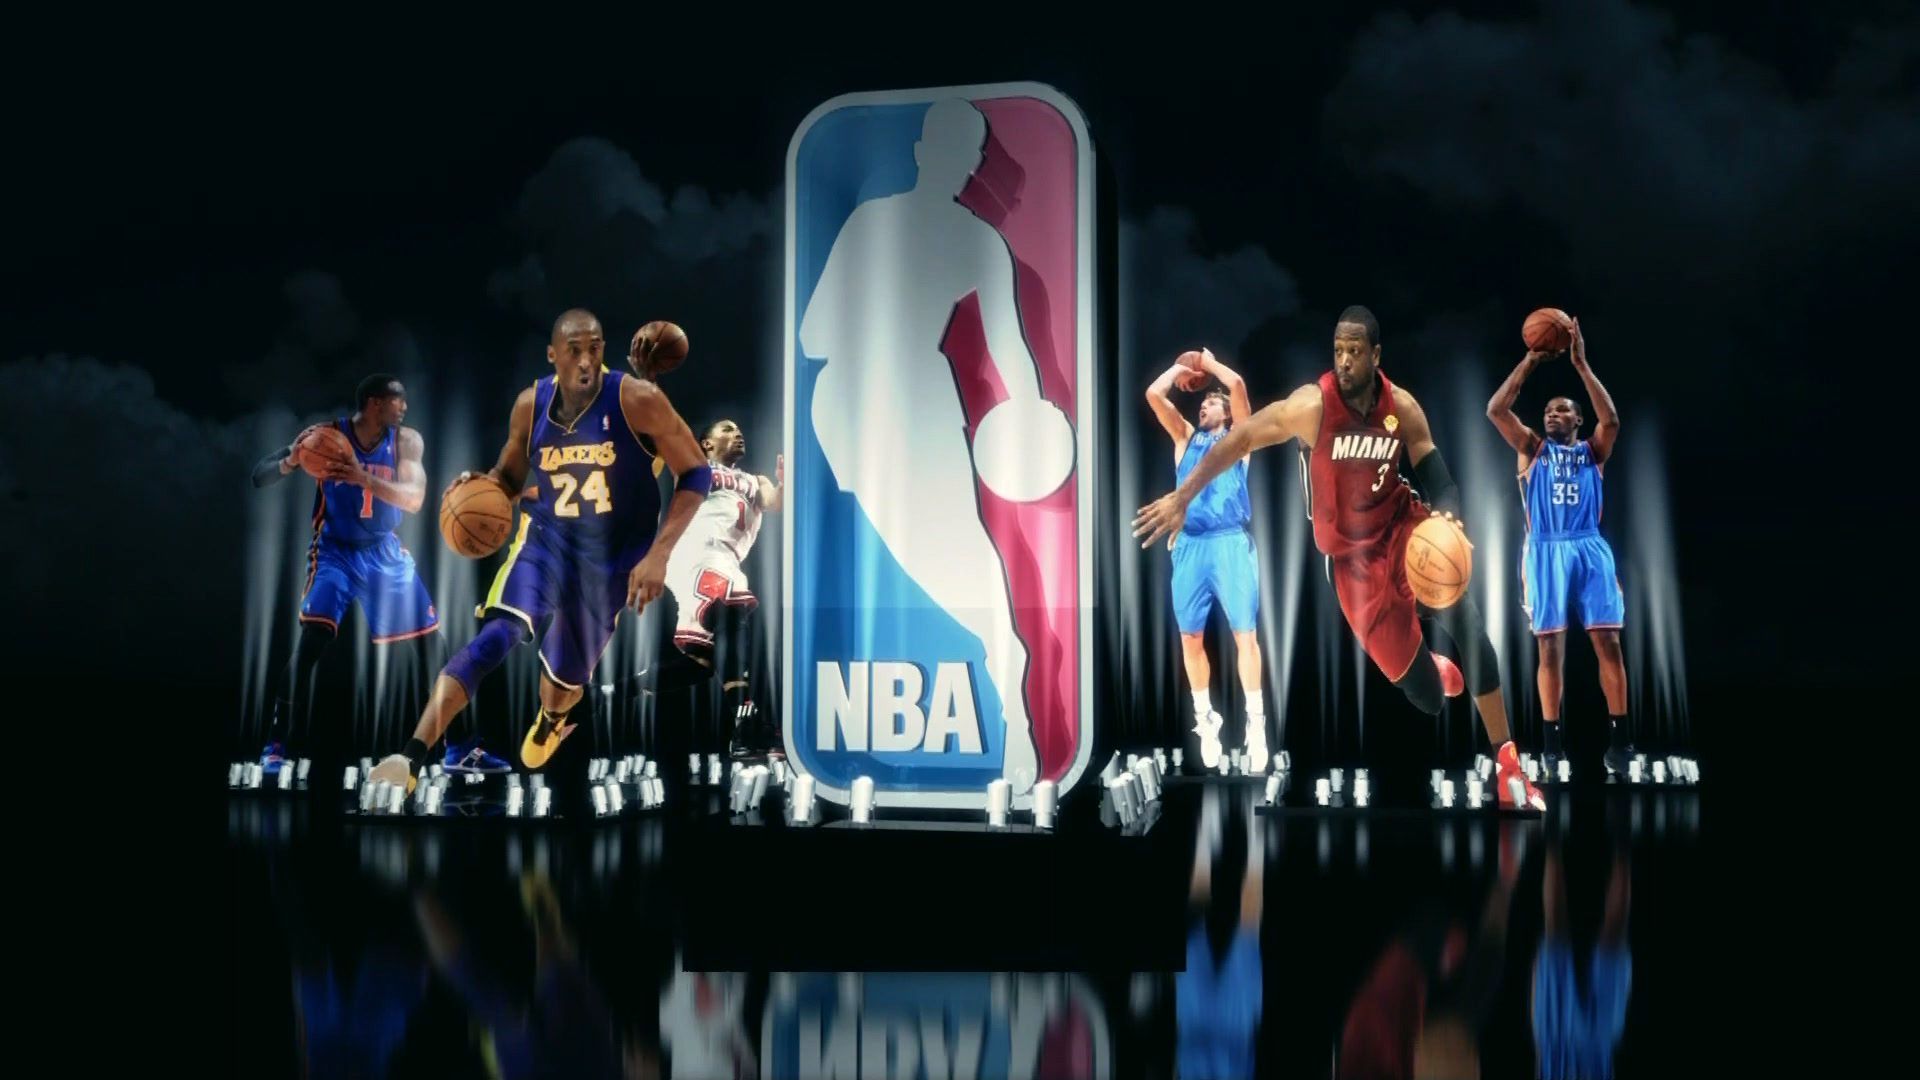 Dành cho những ai yêu thích bóng rổ và NBA, hình nền NBA đẹp sẽ là sự lựa chọn tuyệt vời cho máy tính của bạn. Khám phá ngay những thiết kế độc đáo và cuốn hút tại PixelsTalk.Net!